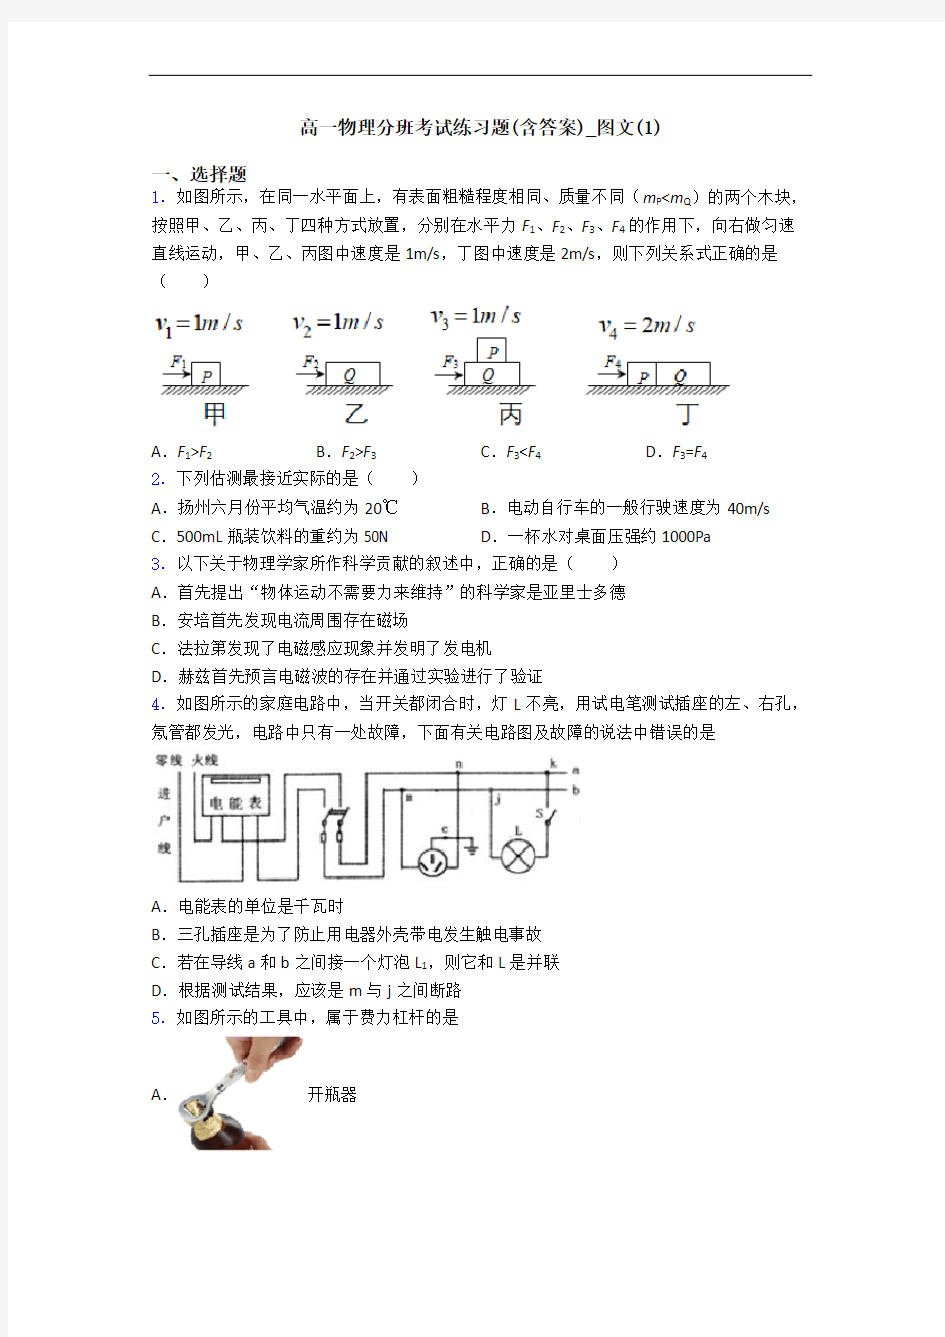 高一物理分班考试练习题(含答案)_图文(1)